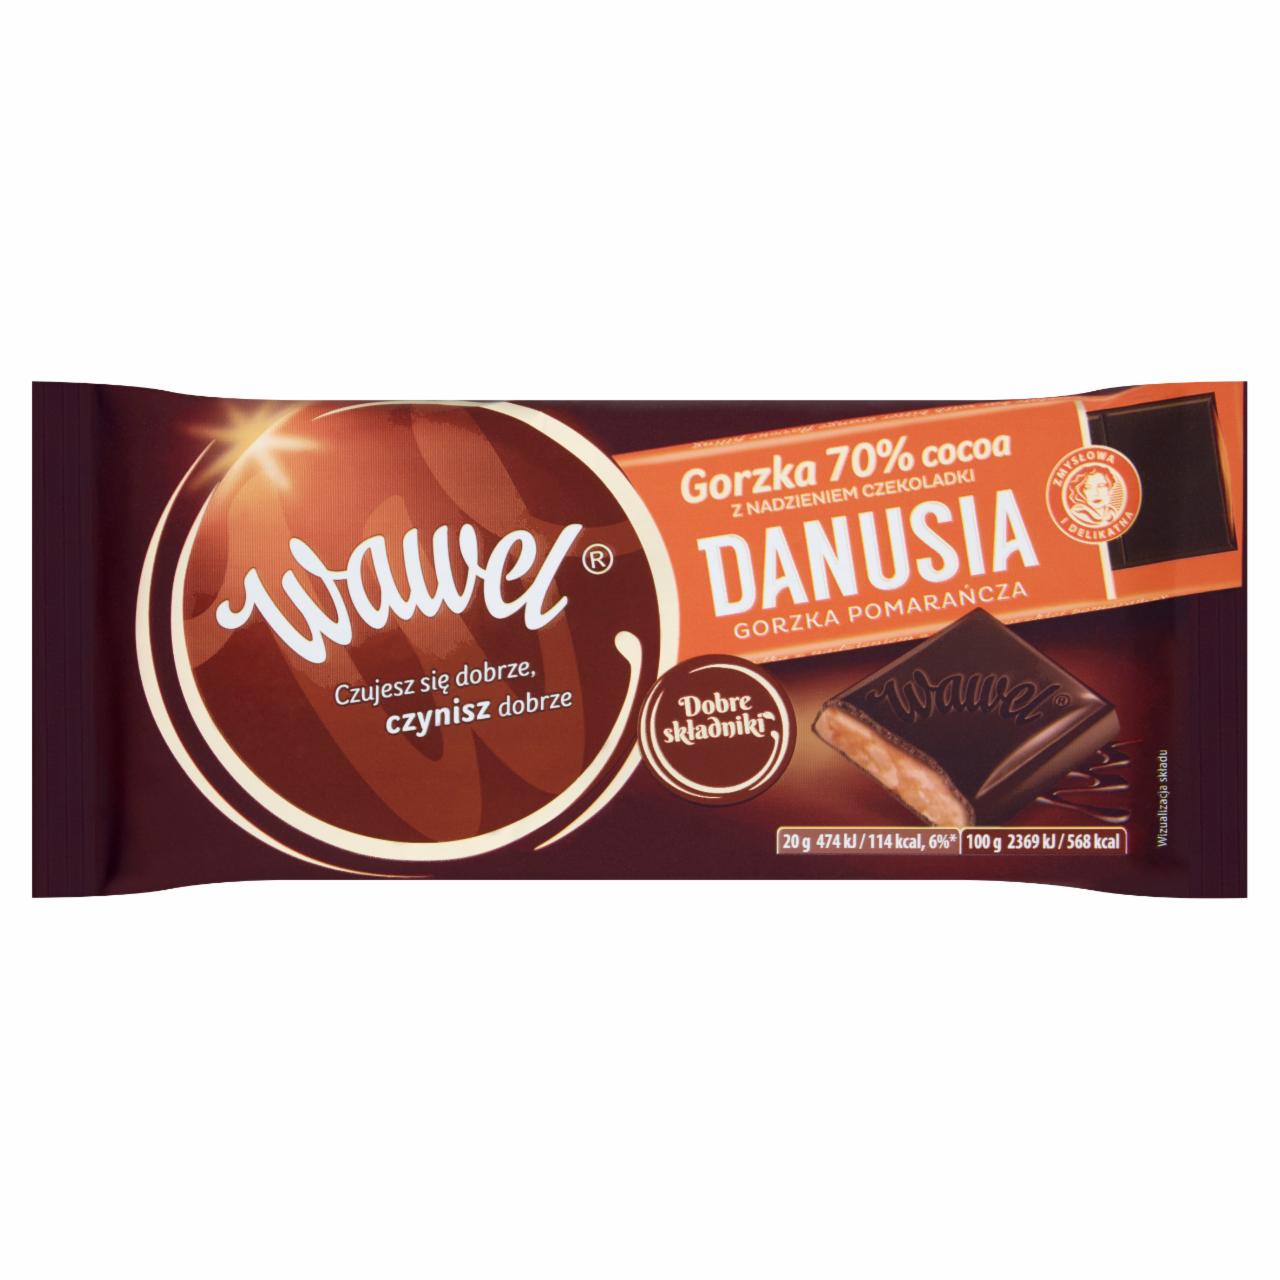 Zdjęcia - Wawel Czekolada gorzka 70% Cocoa z nadzieniem czekoladki Danusia gorzka pomarańcza 100 g